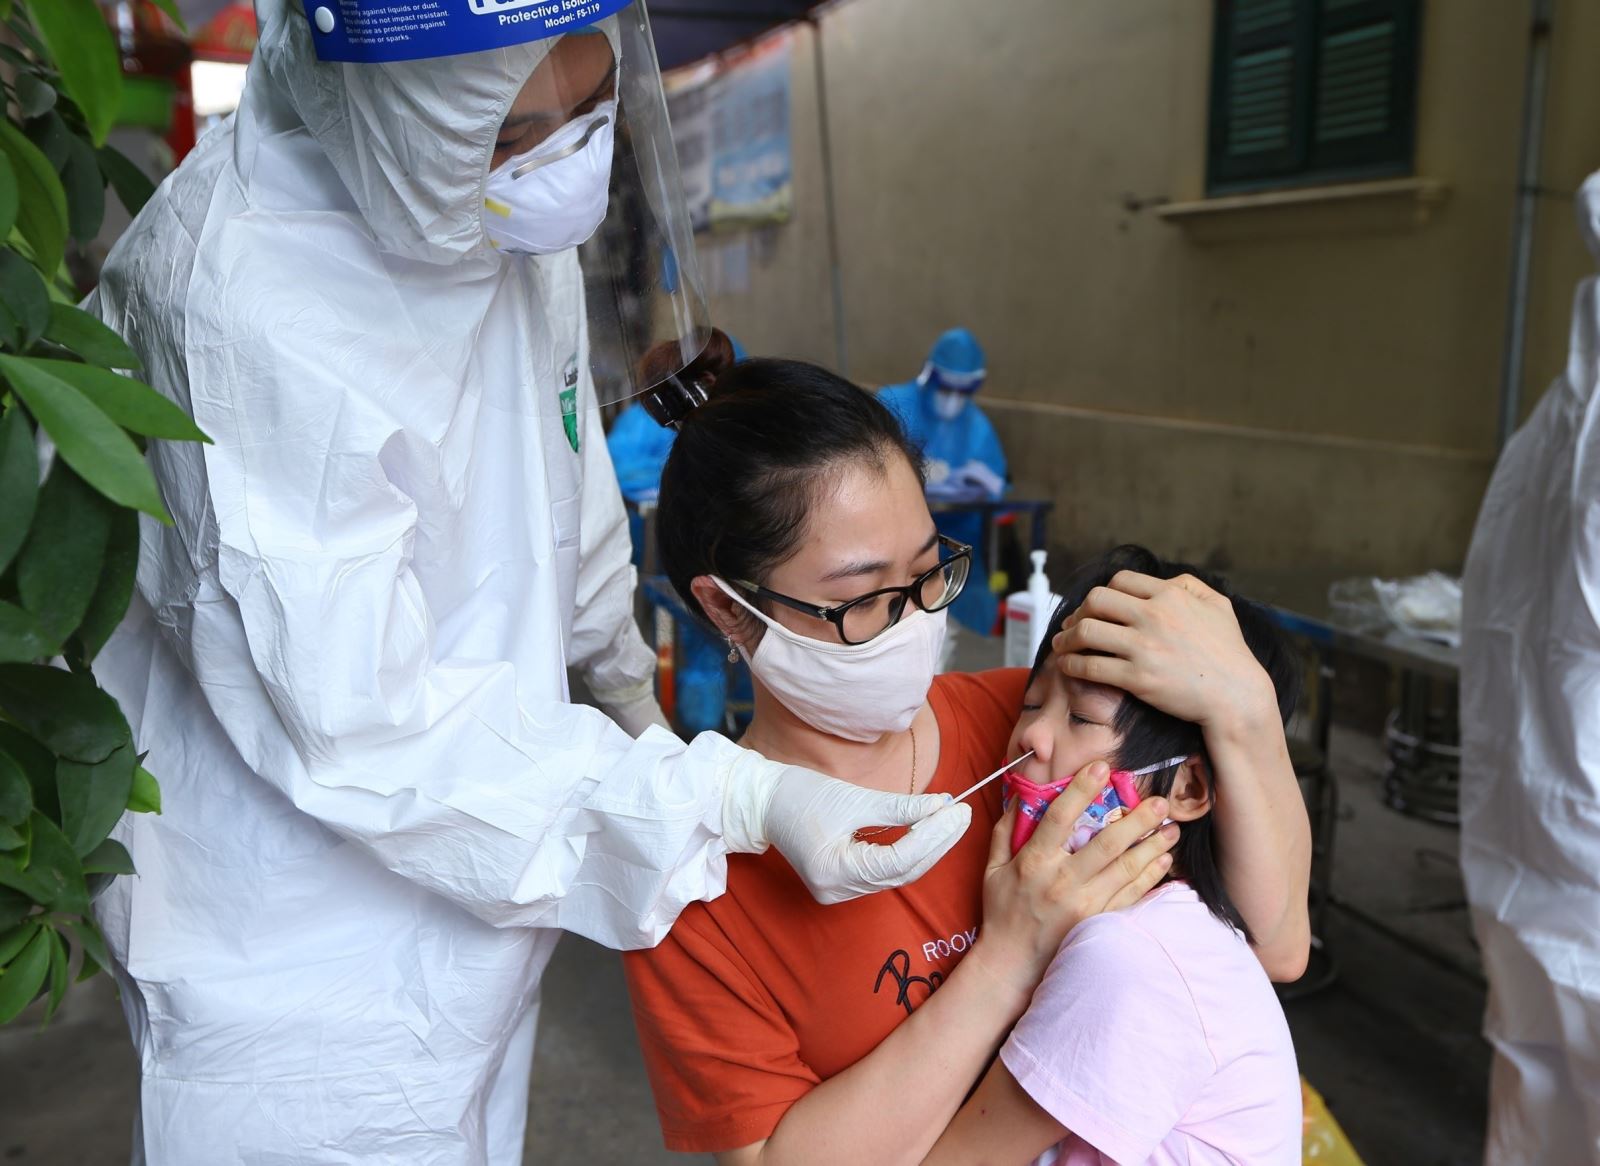  Lực lượng y tế huyện Đan Phượng (Hà Nội) lấy mẫu xét nghiệm cho trẻ em trong khu vực phong tỏa xã Tân Lập (ảnh chụp ngày 2-9-2021). Ảnh: Hoàng Hiếu/TTXVN.